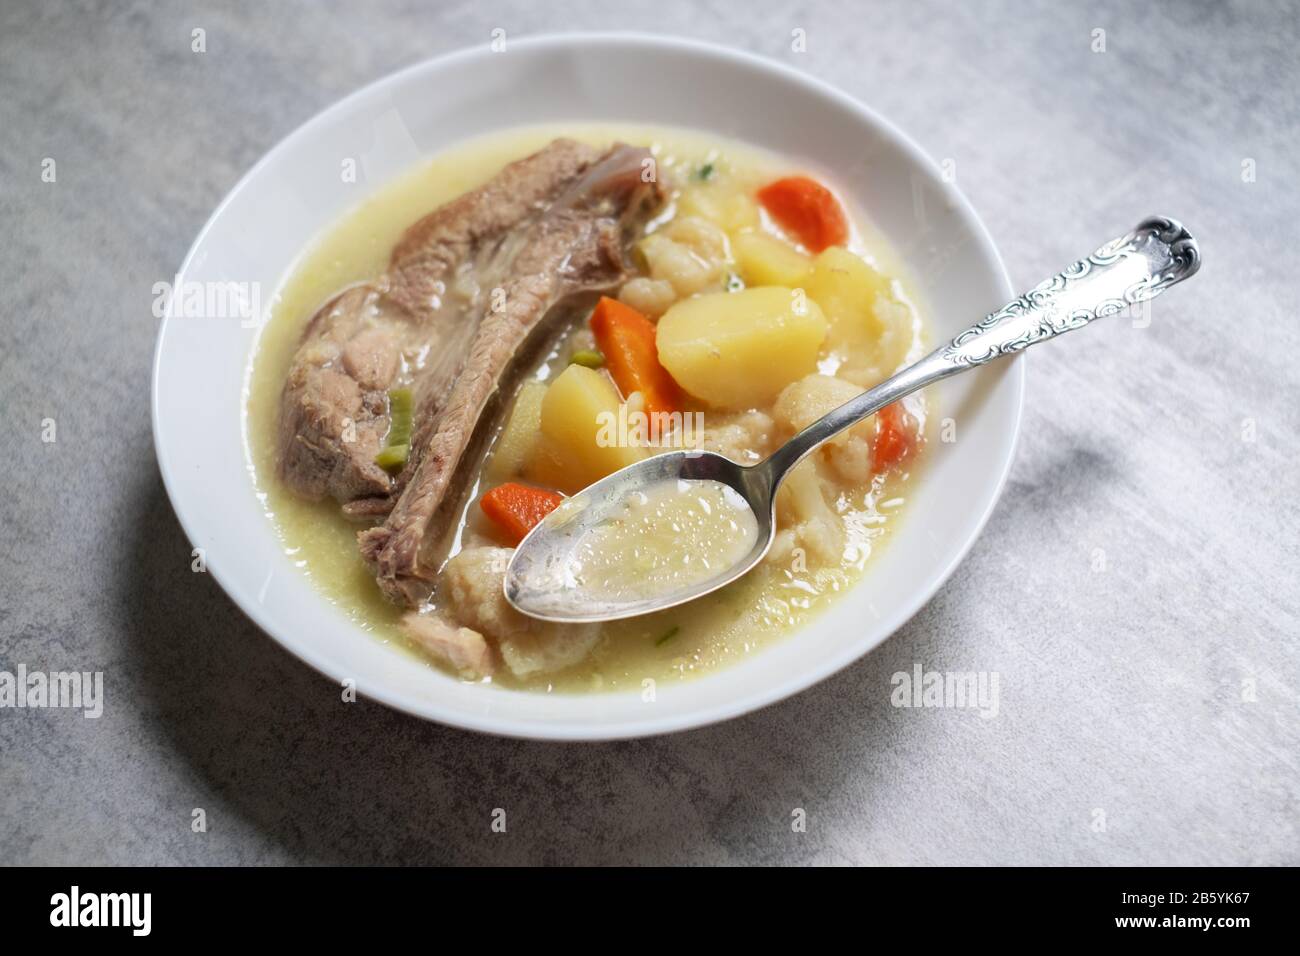 Soupe avec pommes de terre et viande de porc. Photographie alimentaire Banque D'Images